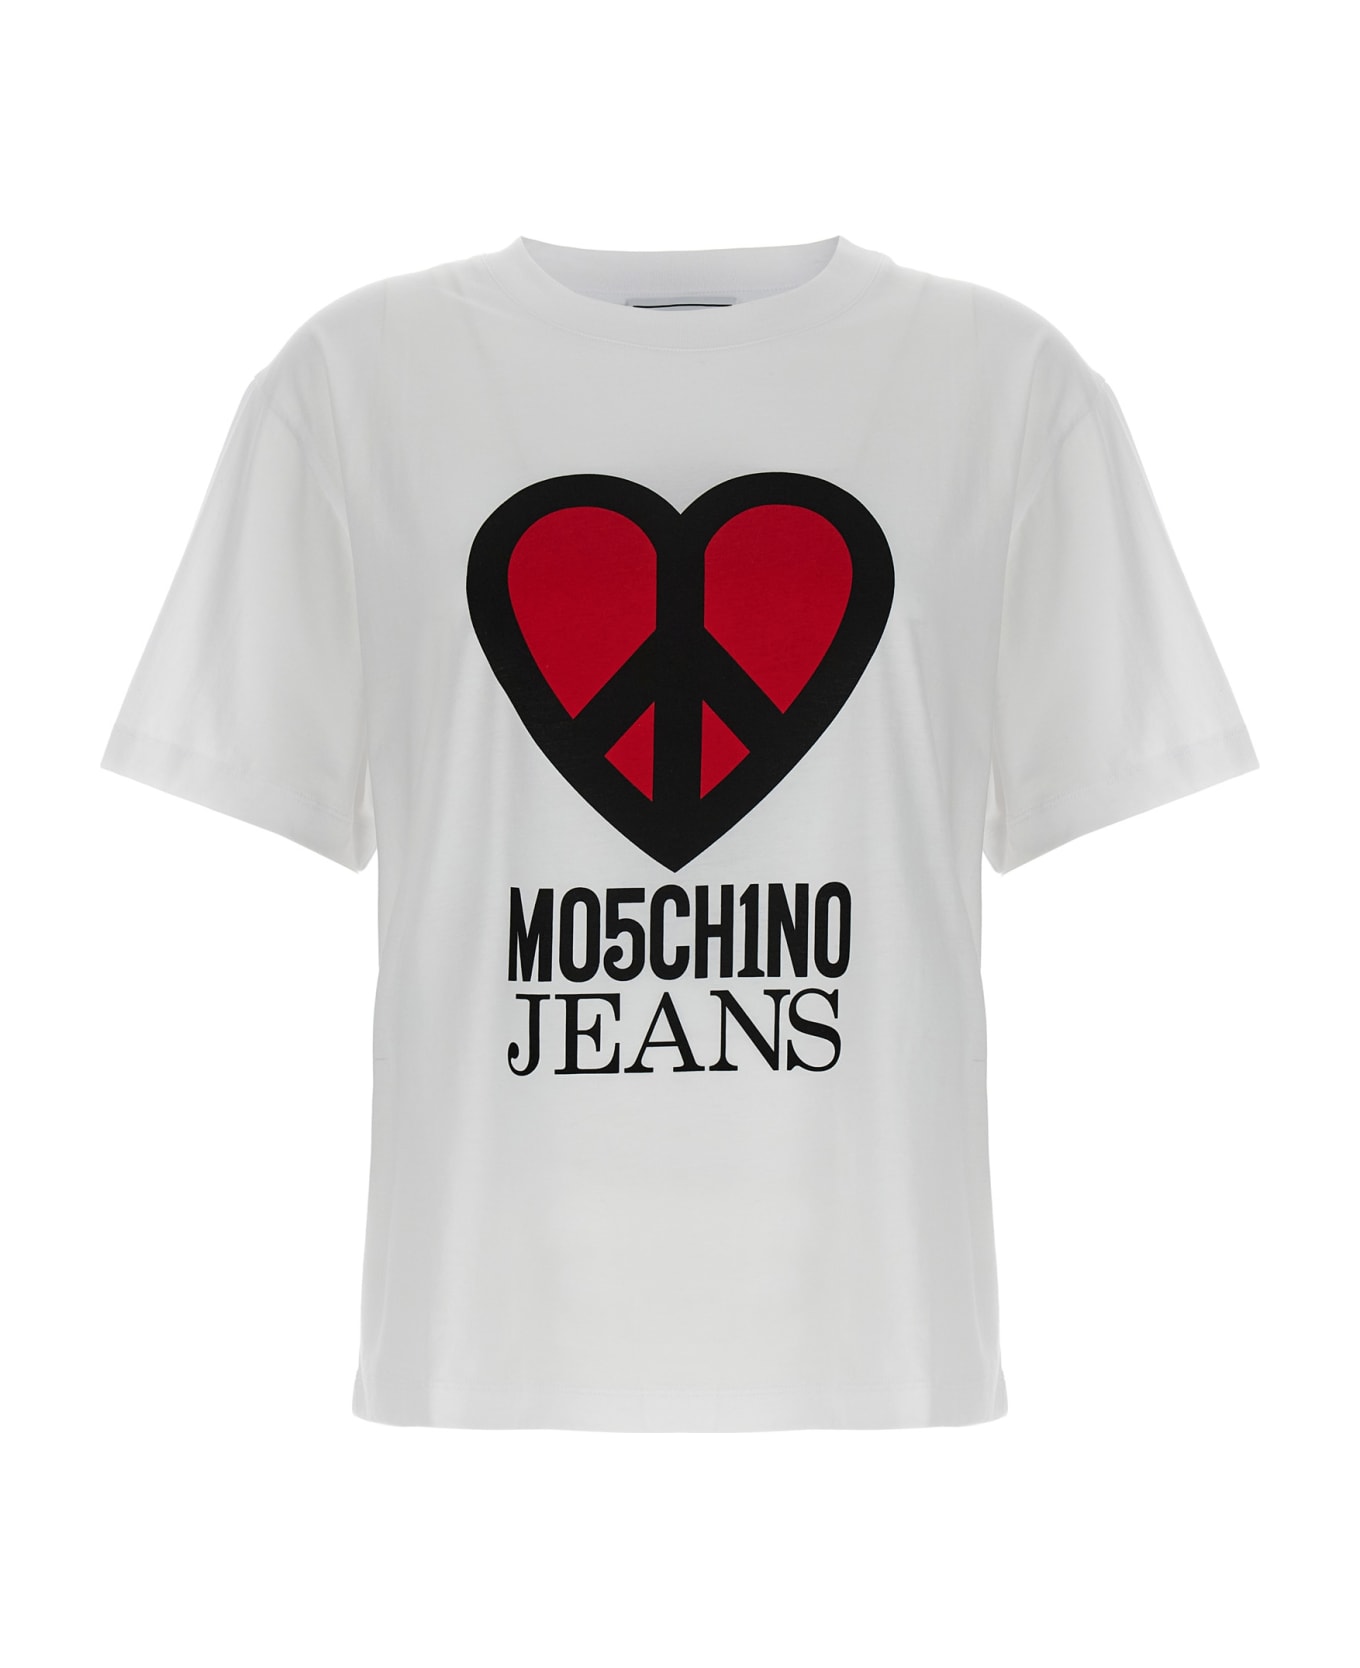 M05CH1N0 Jeans Logo T-shirt - White